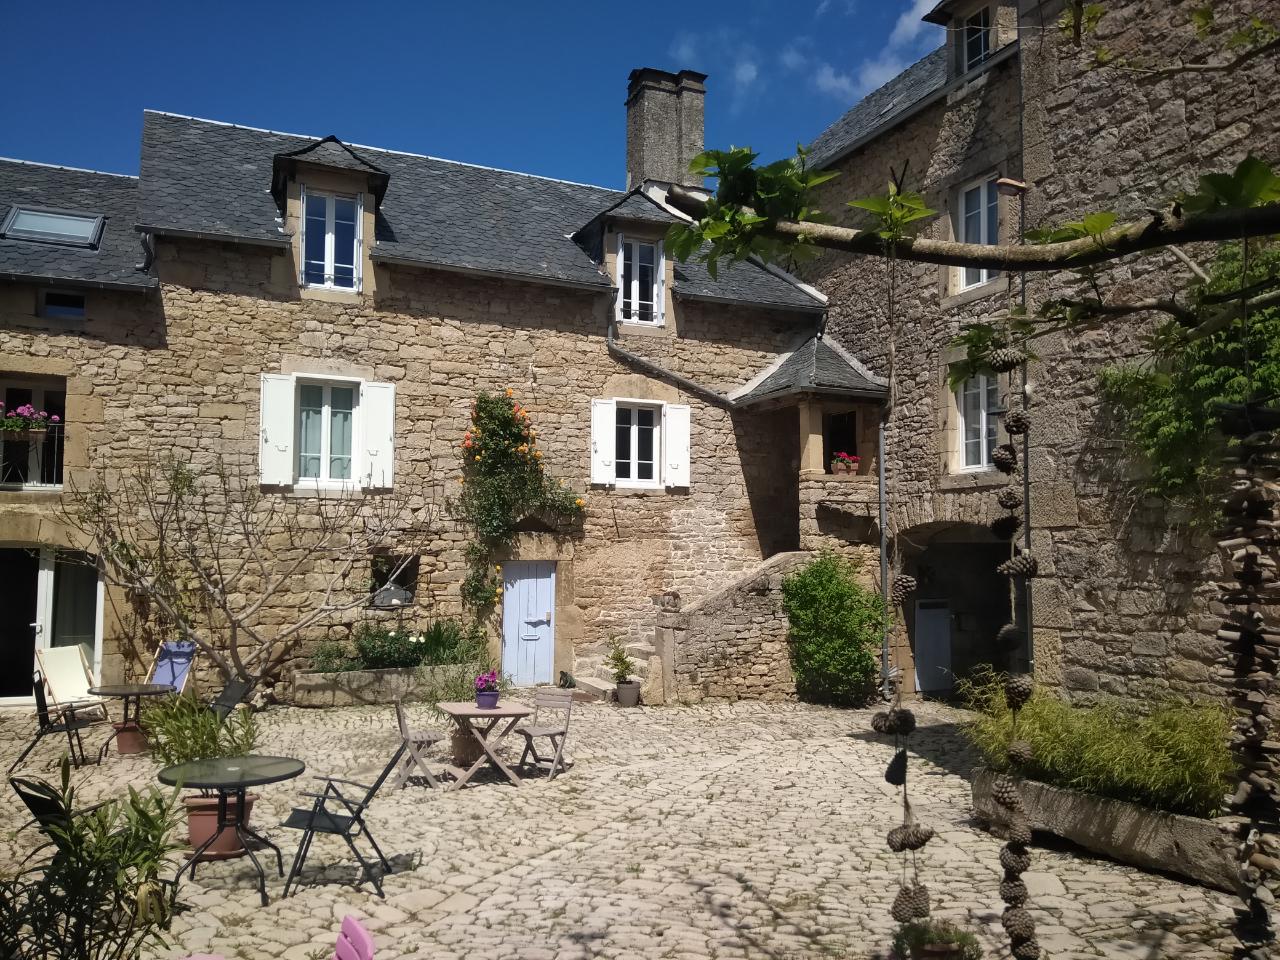 Hôte GreenGo: Le Clos du Barry  - chambres d'hôtes de charme en Aveyron - Image 10